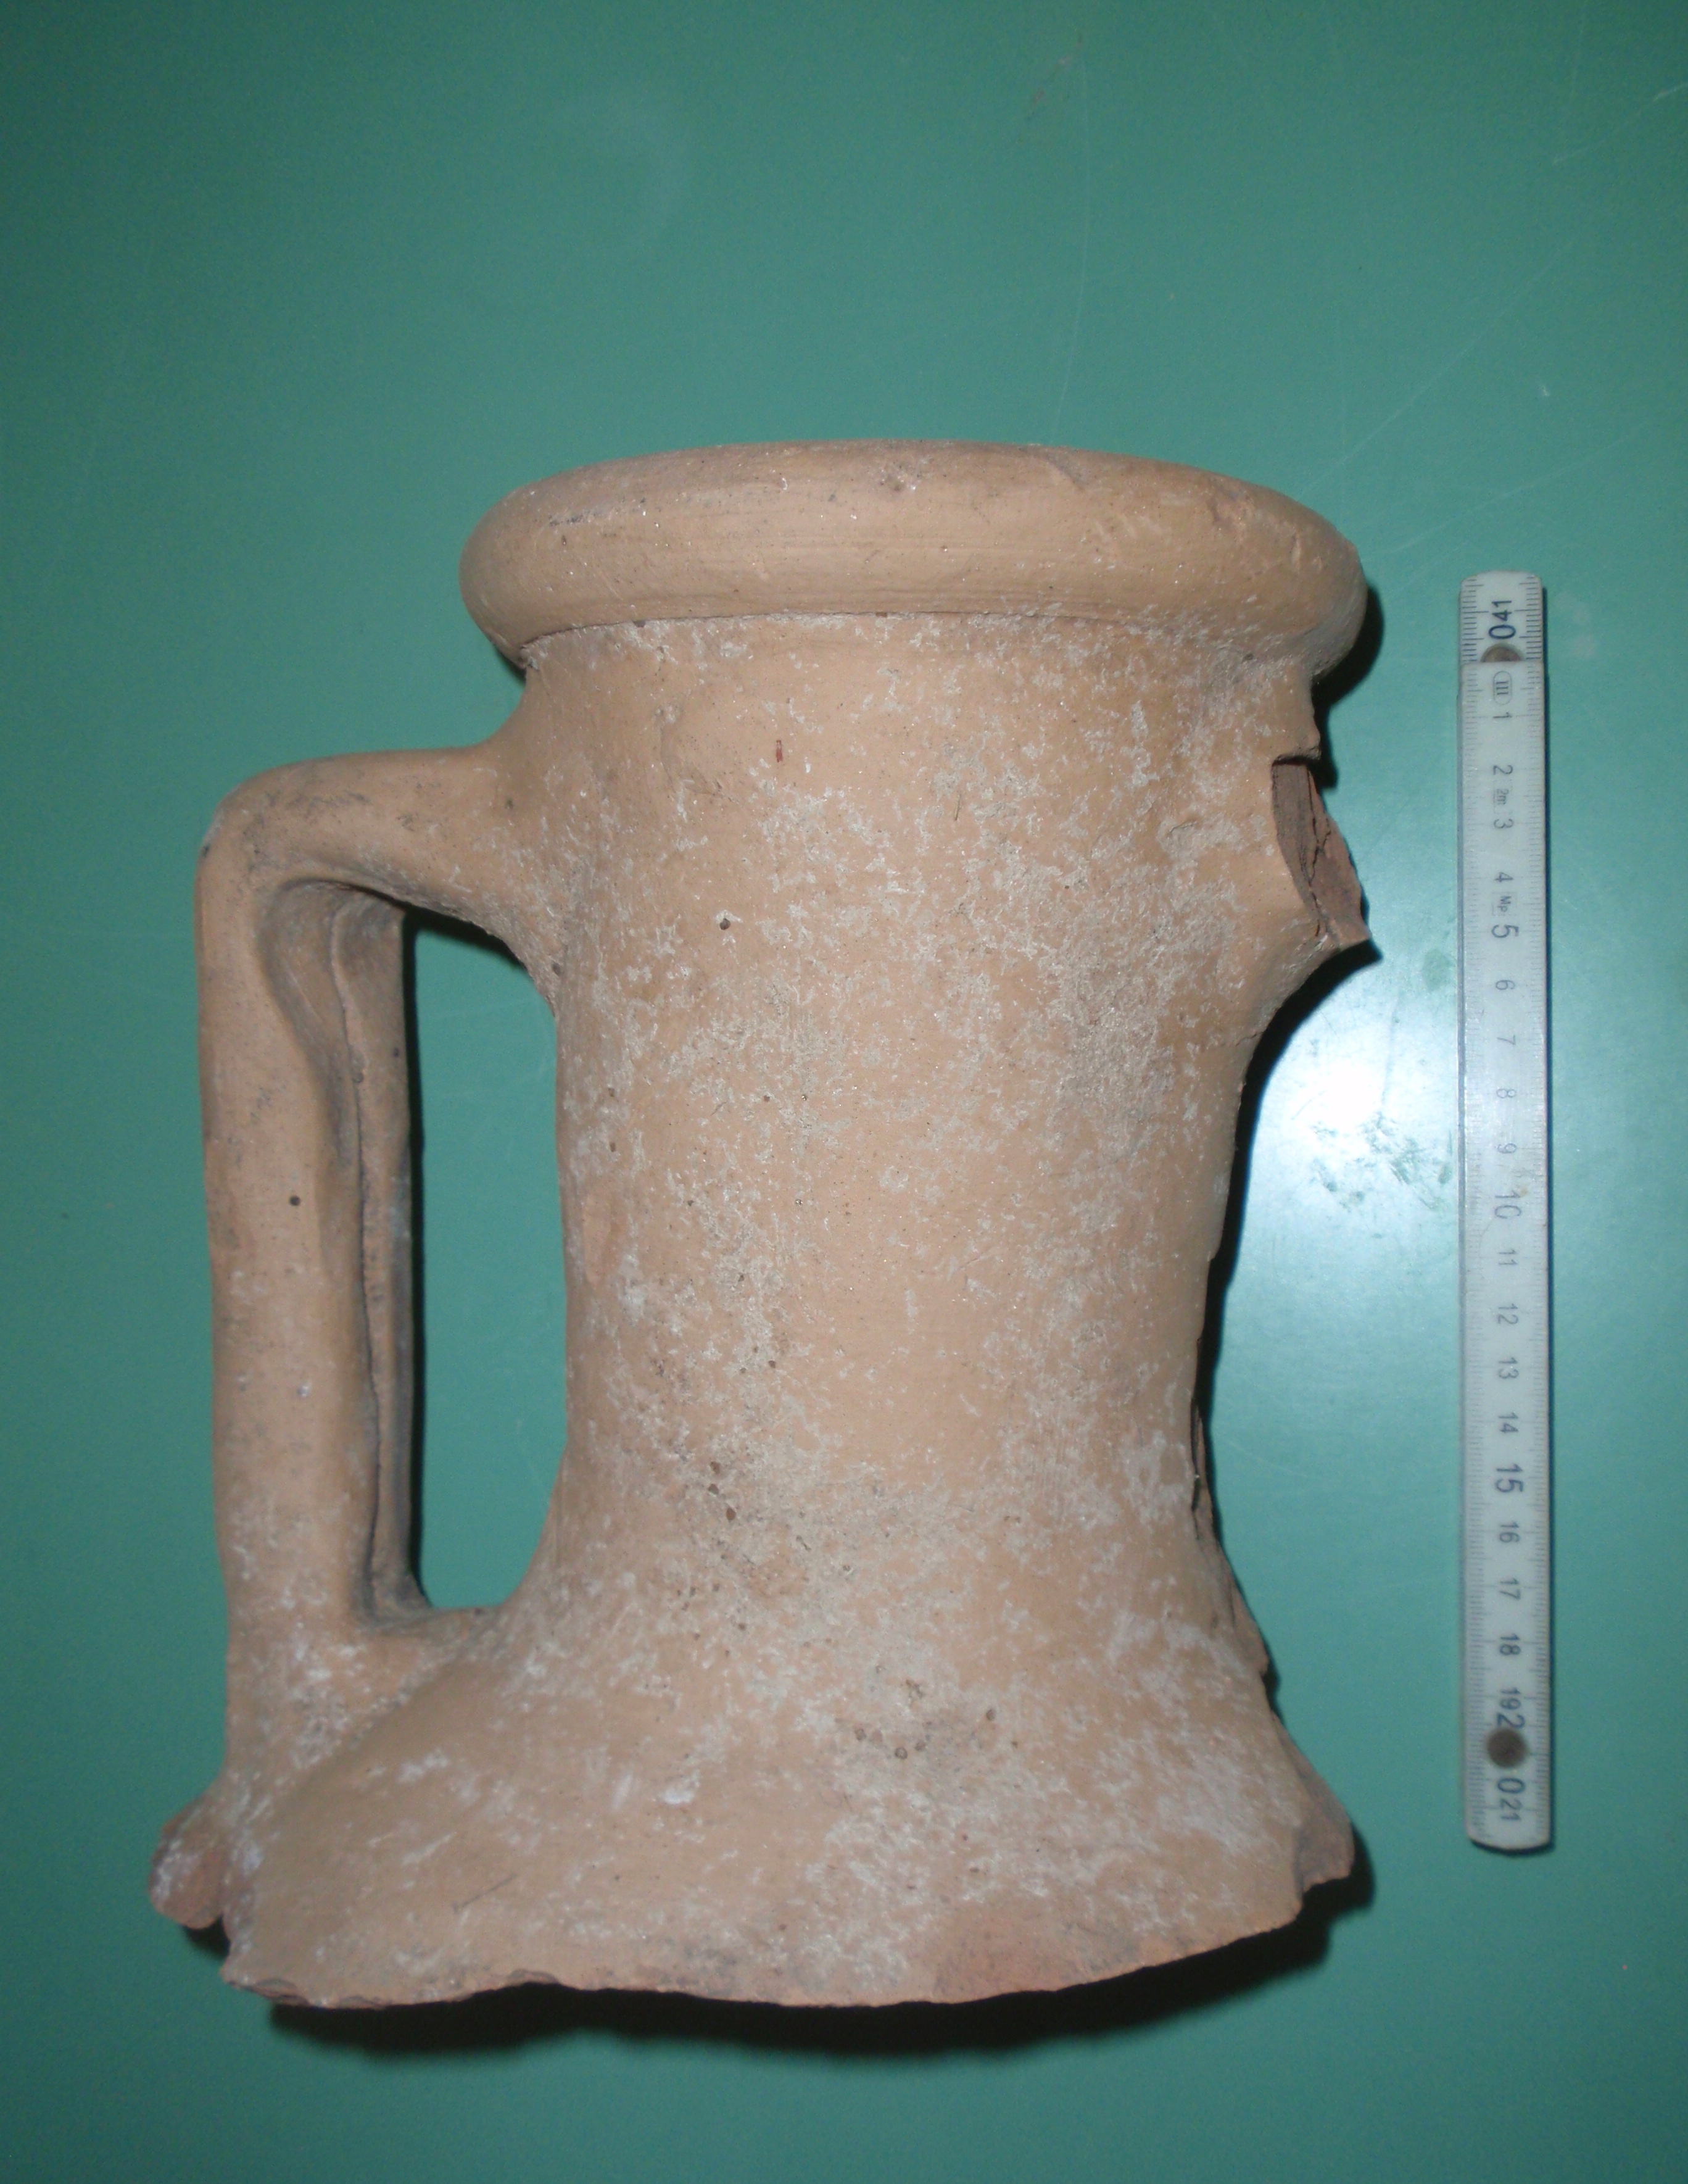 anfora tipo Dressel 2-4 con anse bifide ed orlo arrotondato (anfora, Dressel 2-4, anfora da trasporto della prima età imperiale) (prima meta' Eta' romana imperiale)